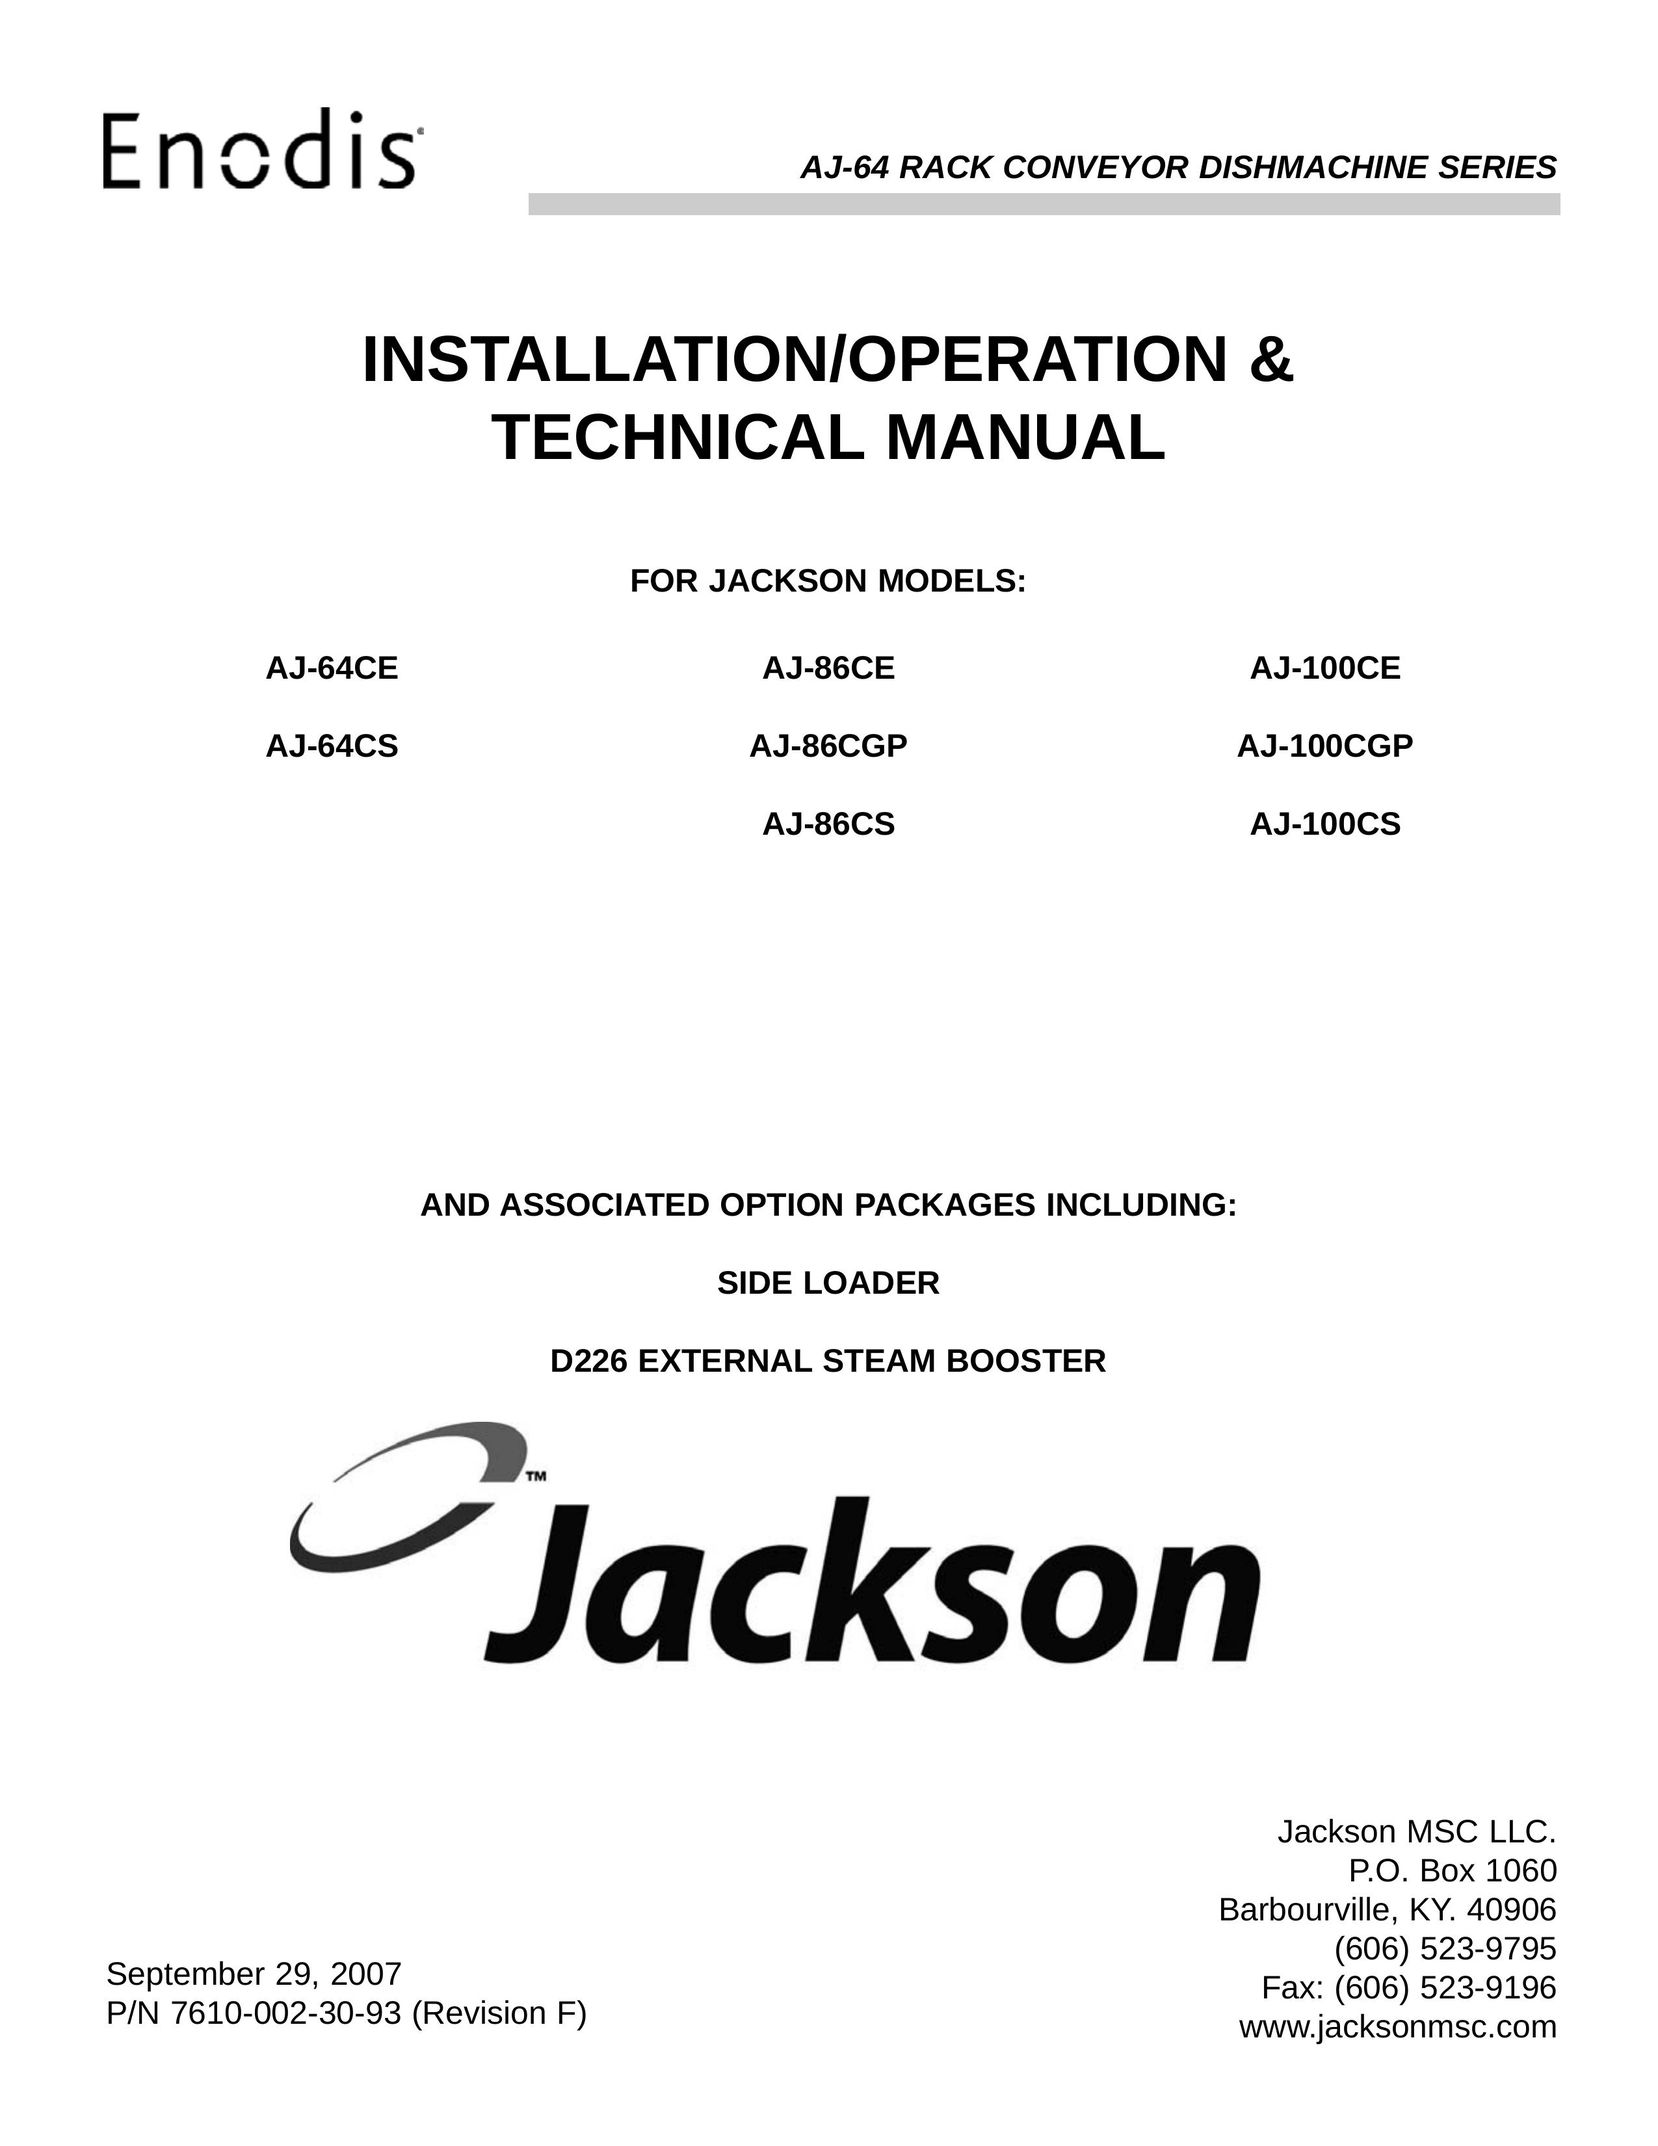 Jackson AJ-100CGP Dishwasher User Manual